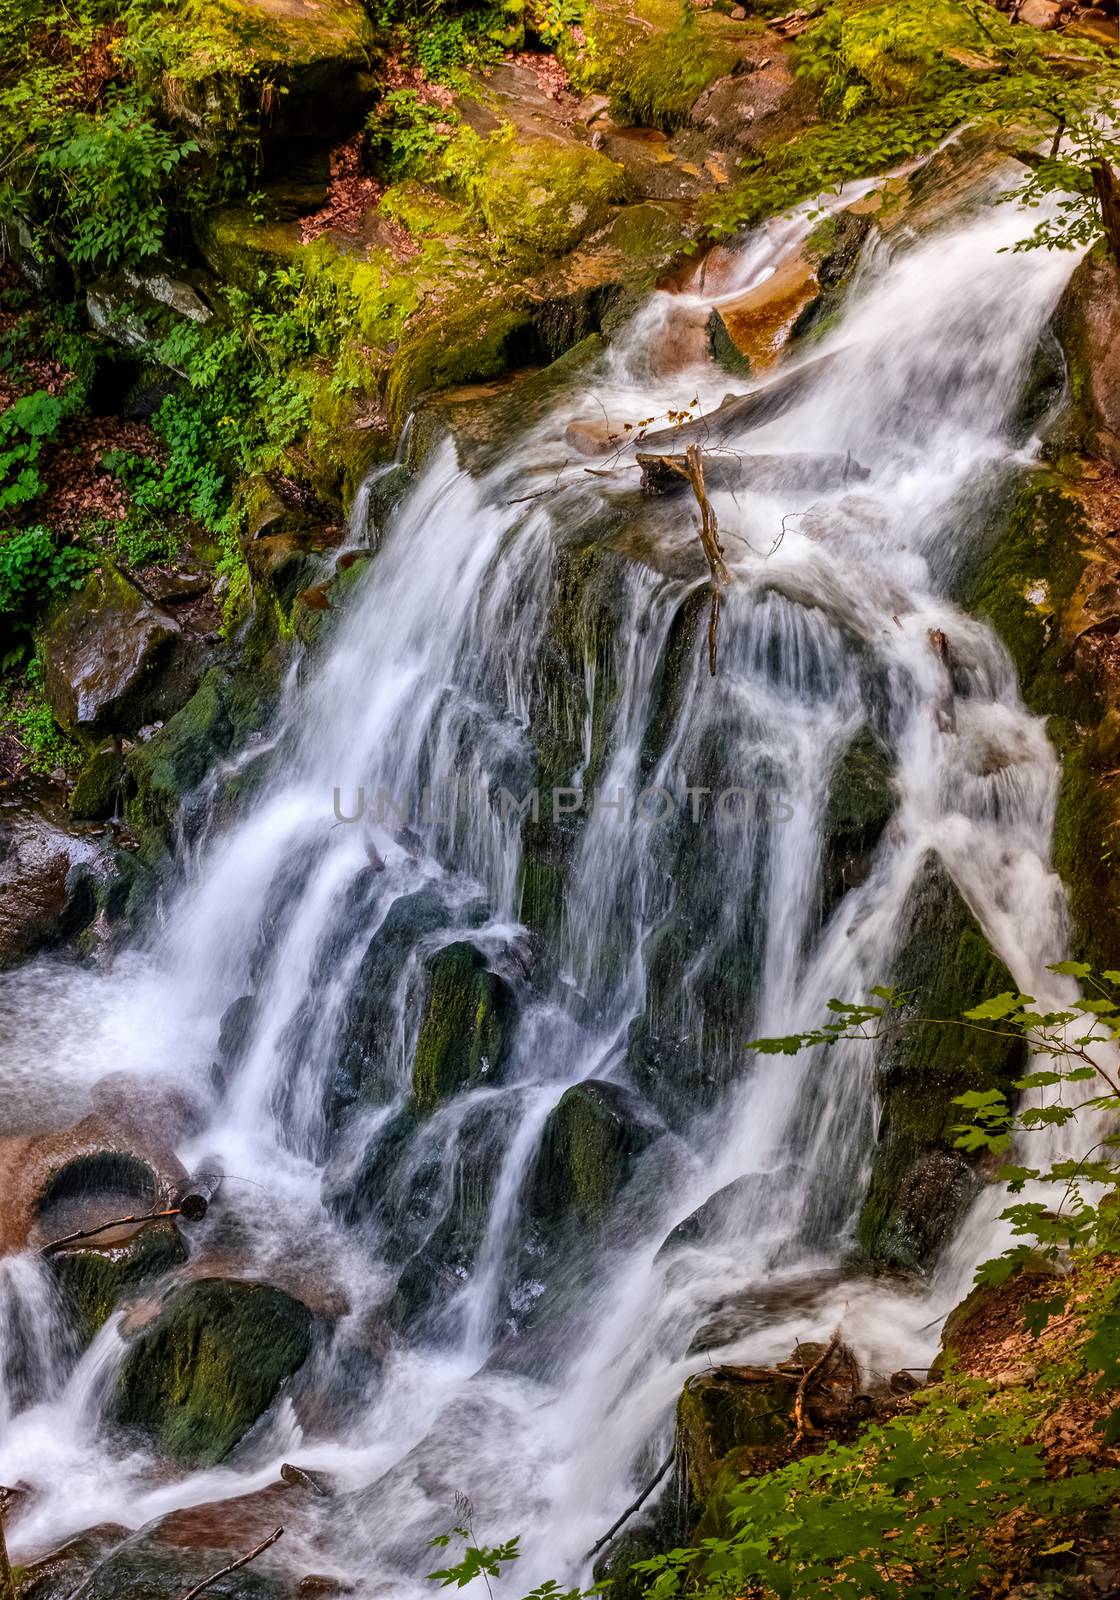 waterfall Shypot in Carpathian forest by Pellinni